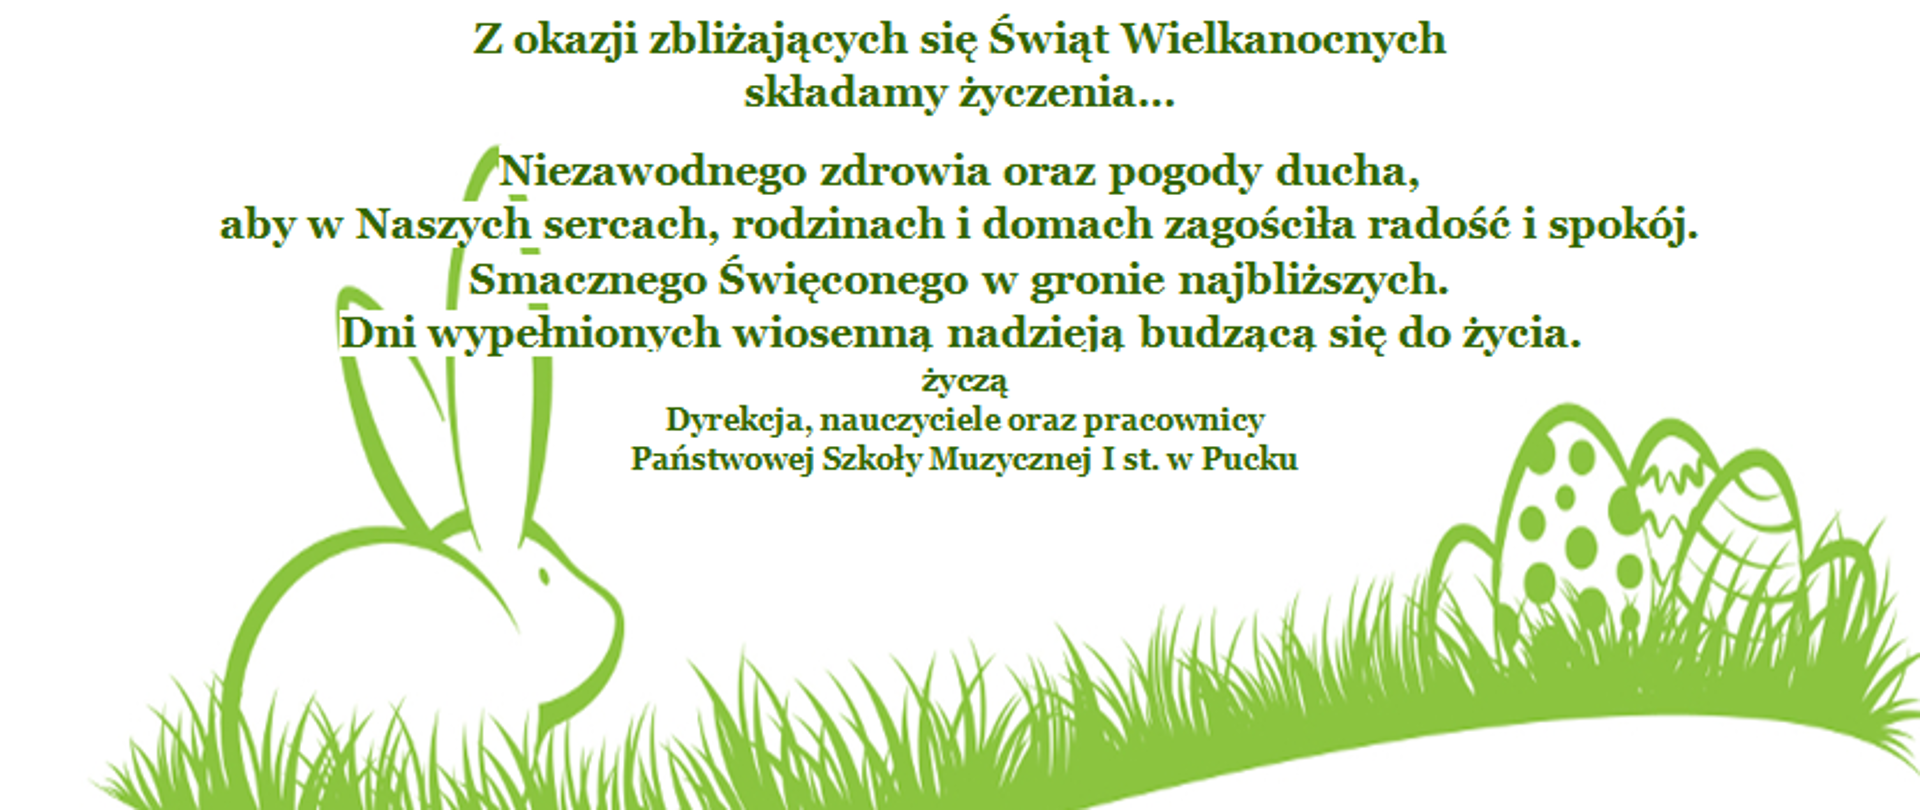 Zdjęcie przedstawia tekst z życzeniami oraz pod tekstem wielkanocny zajączek i jajka na trawie w zielonym kolorze, 